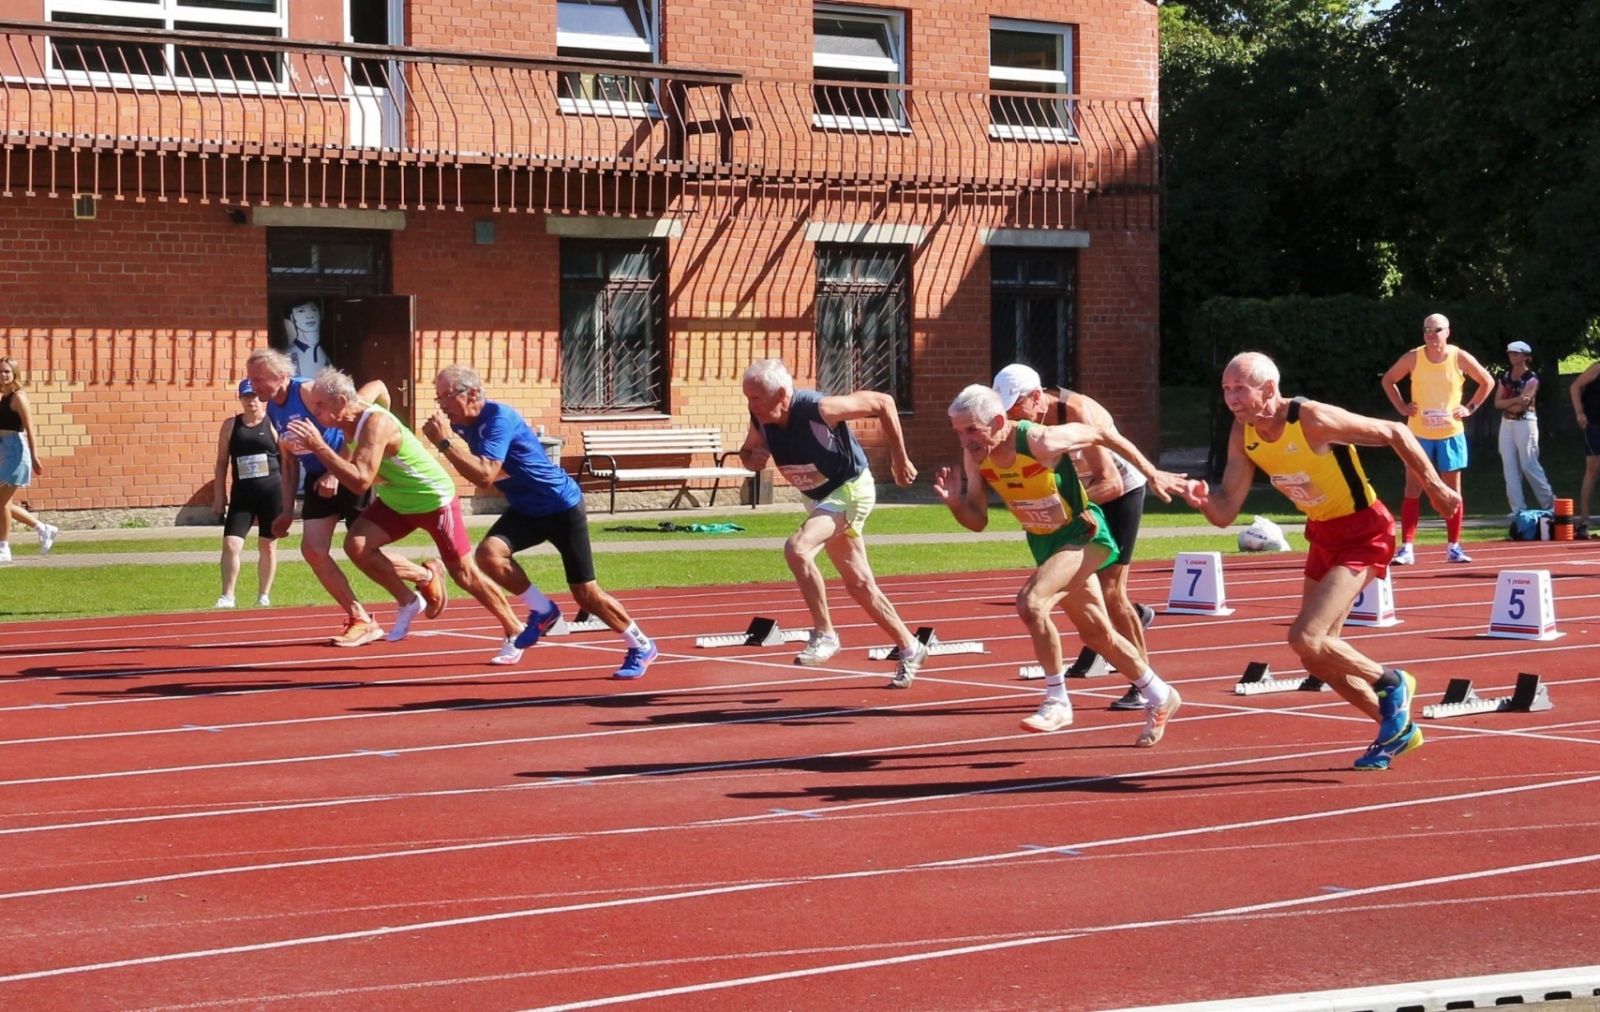 Aivaram Puriņam K65+ grupā zelta medaļa diska mešanā (27,96 m), sudraba medaļa 100 m sprintā (14,52 sek.) un bronzas medaļa šķēpa mešanā (27,98 m).